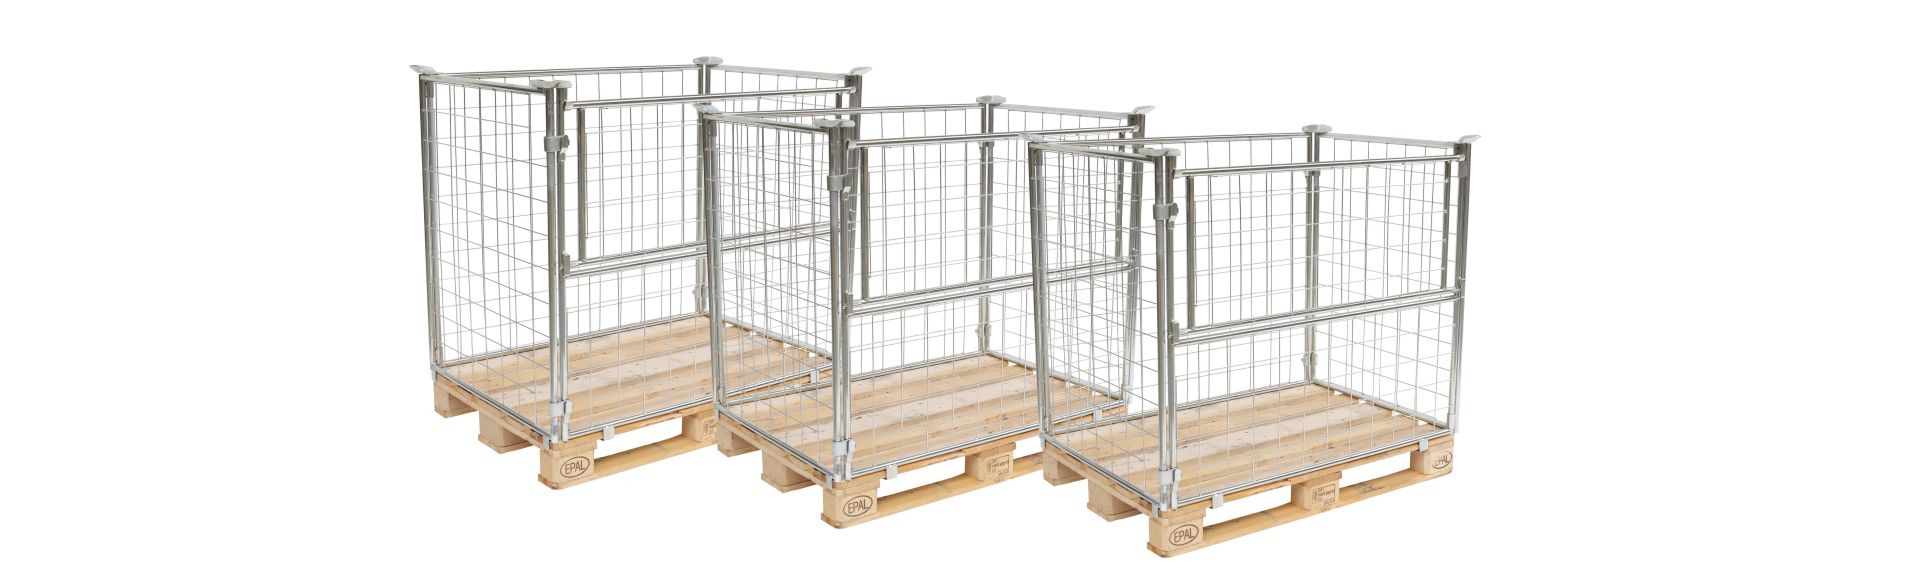 Pallet cage frames